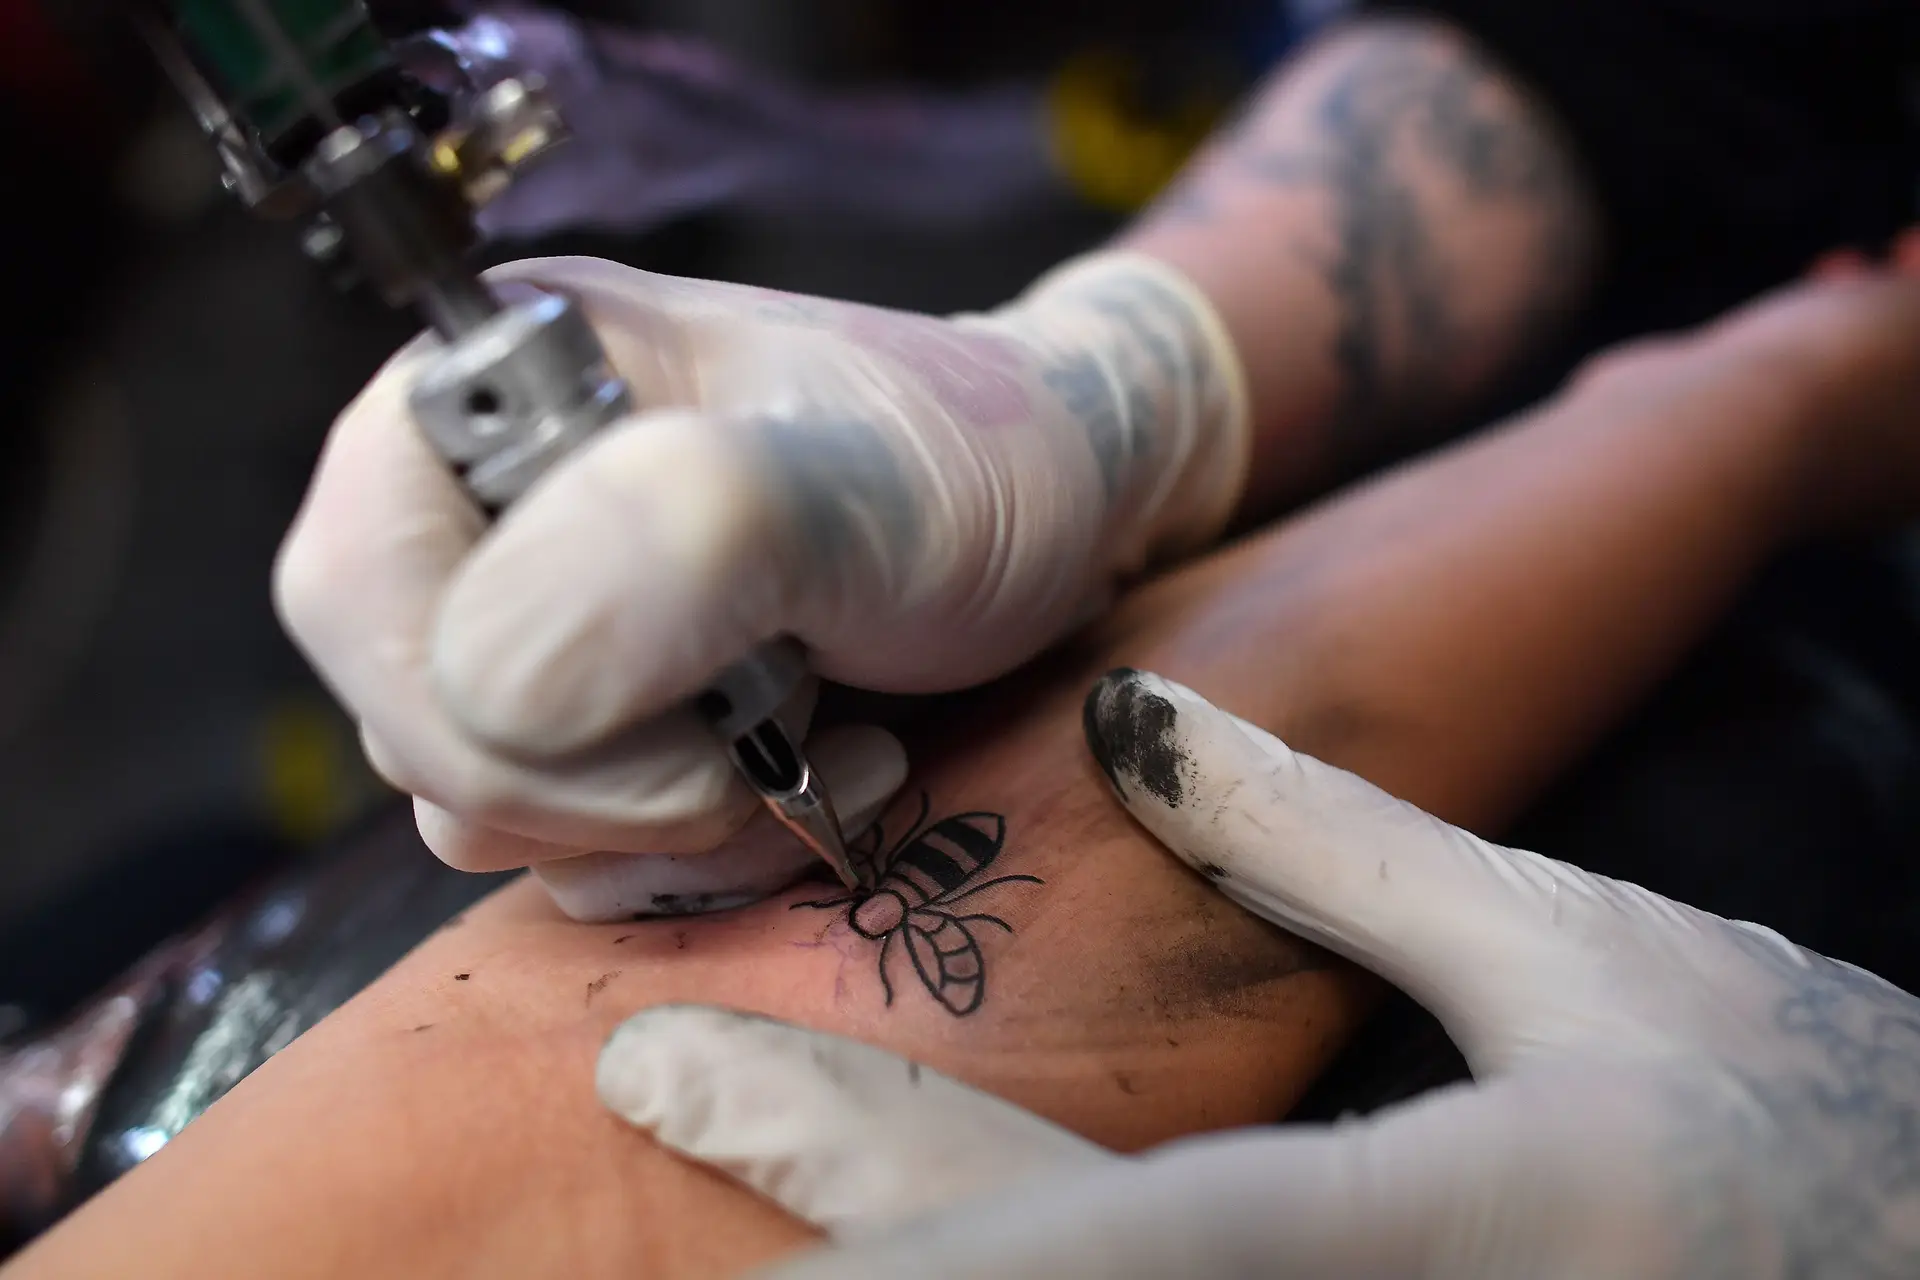 Em Portugal não há legislação específica para atividade do tatuador, um fiscalizador especializado ou uma entidade responsável pela vigilância de reações adversas. Contudo, as tintas e forma de descarte de resíduos estão regulados.